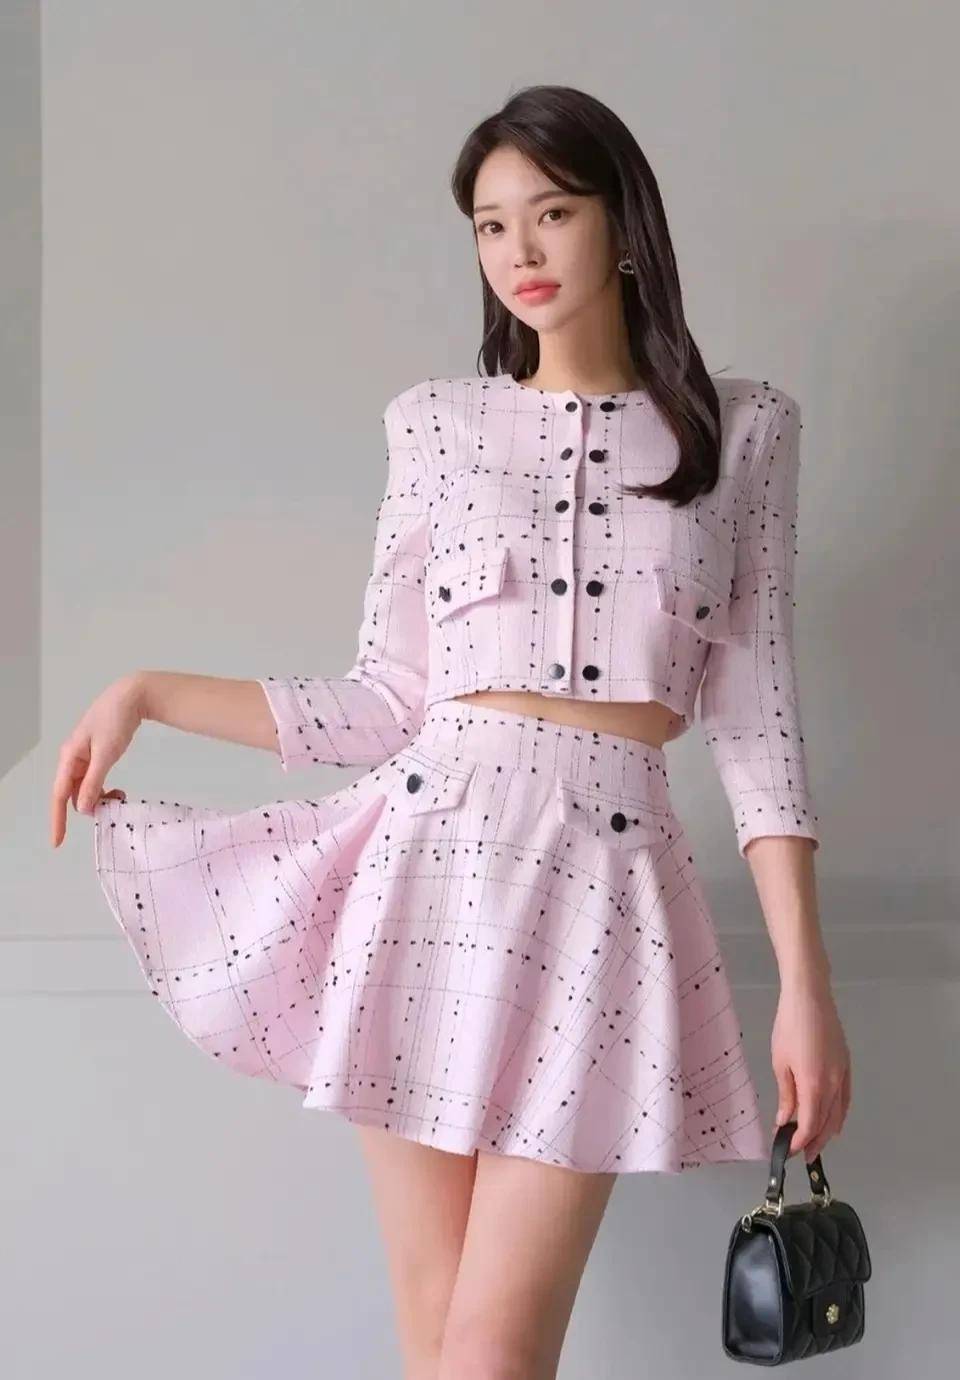 韩国美女模特朴正允,10套春季服装征服你,套套经典,时尚职业美